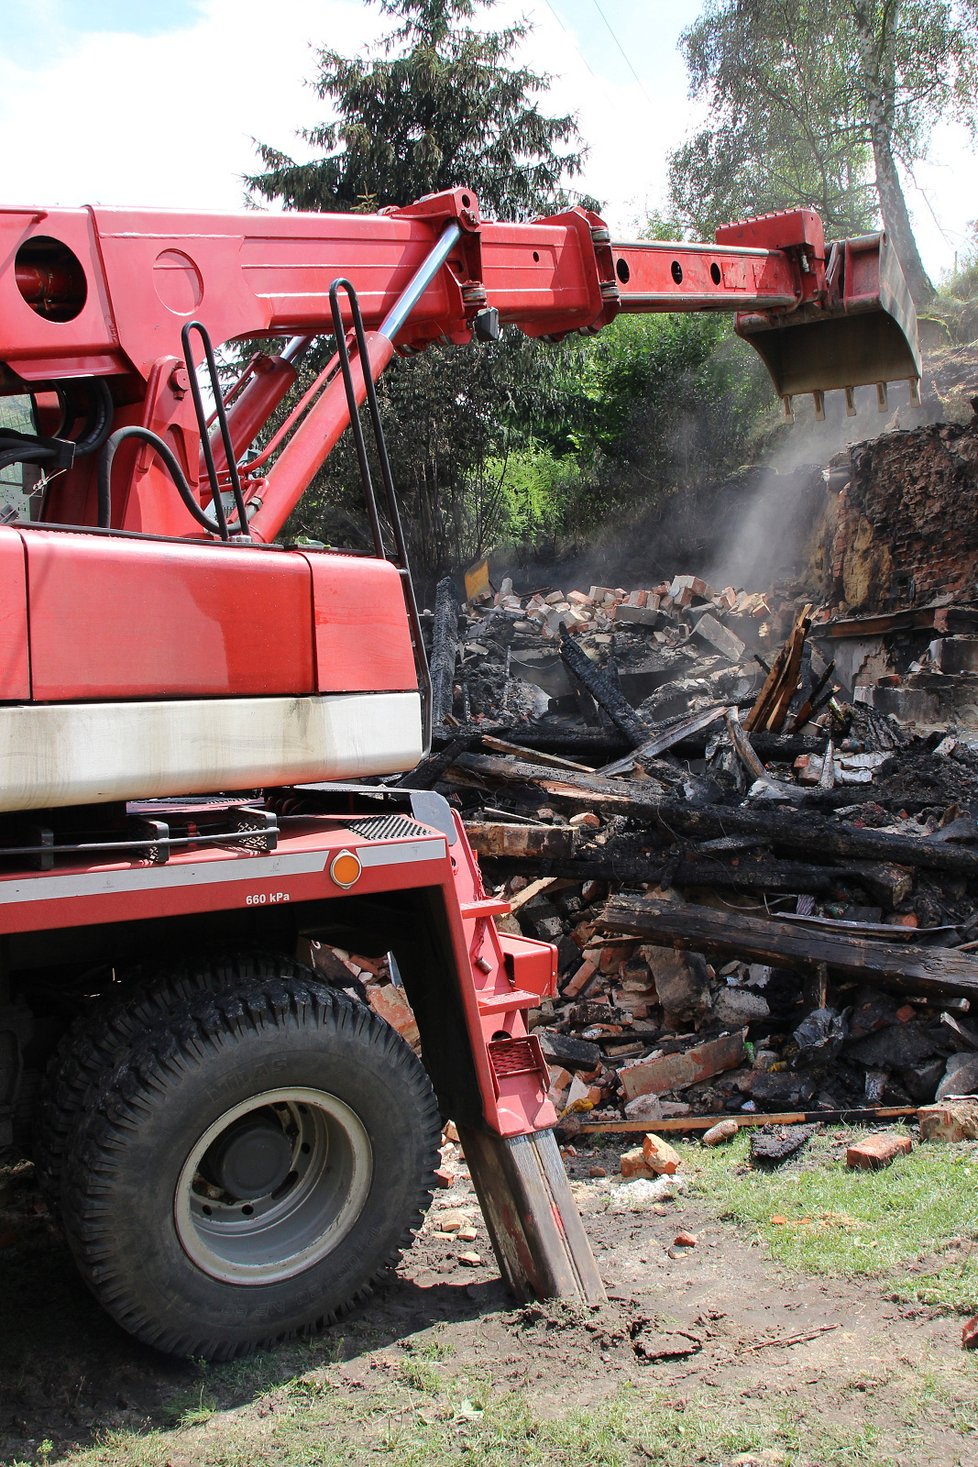 Výbuch plynu a následný požár rodinného domu na Mělnicku